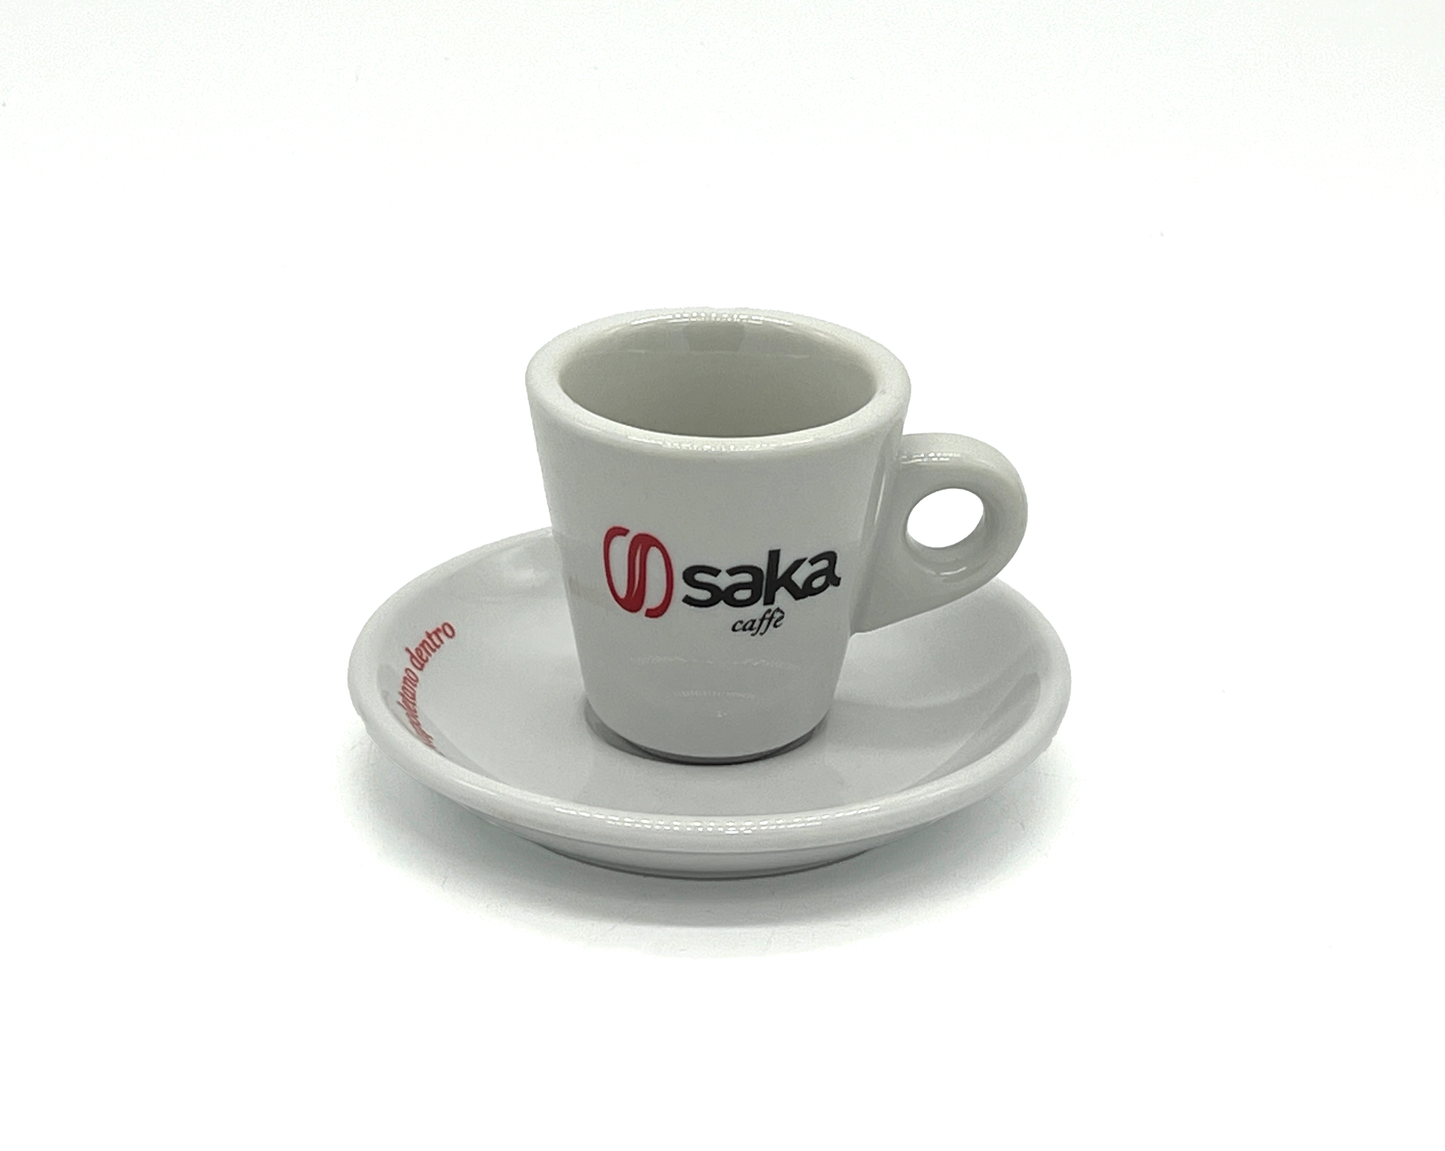 Saka Espresso Cup and Saucer - Modena